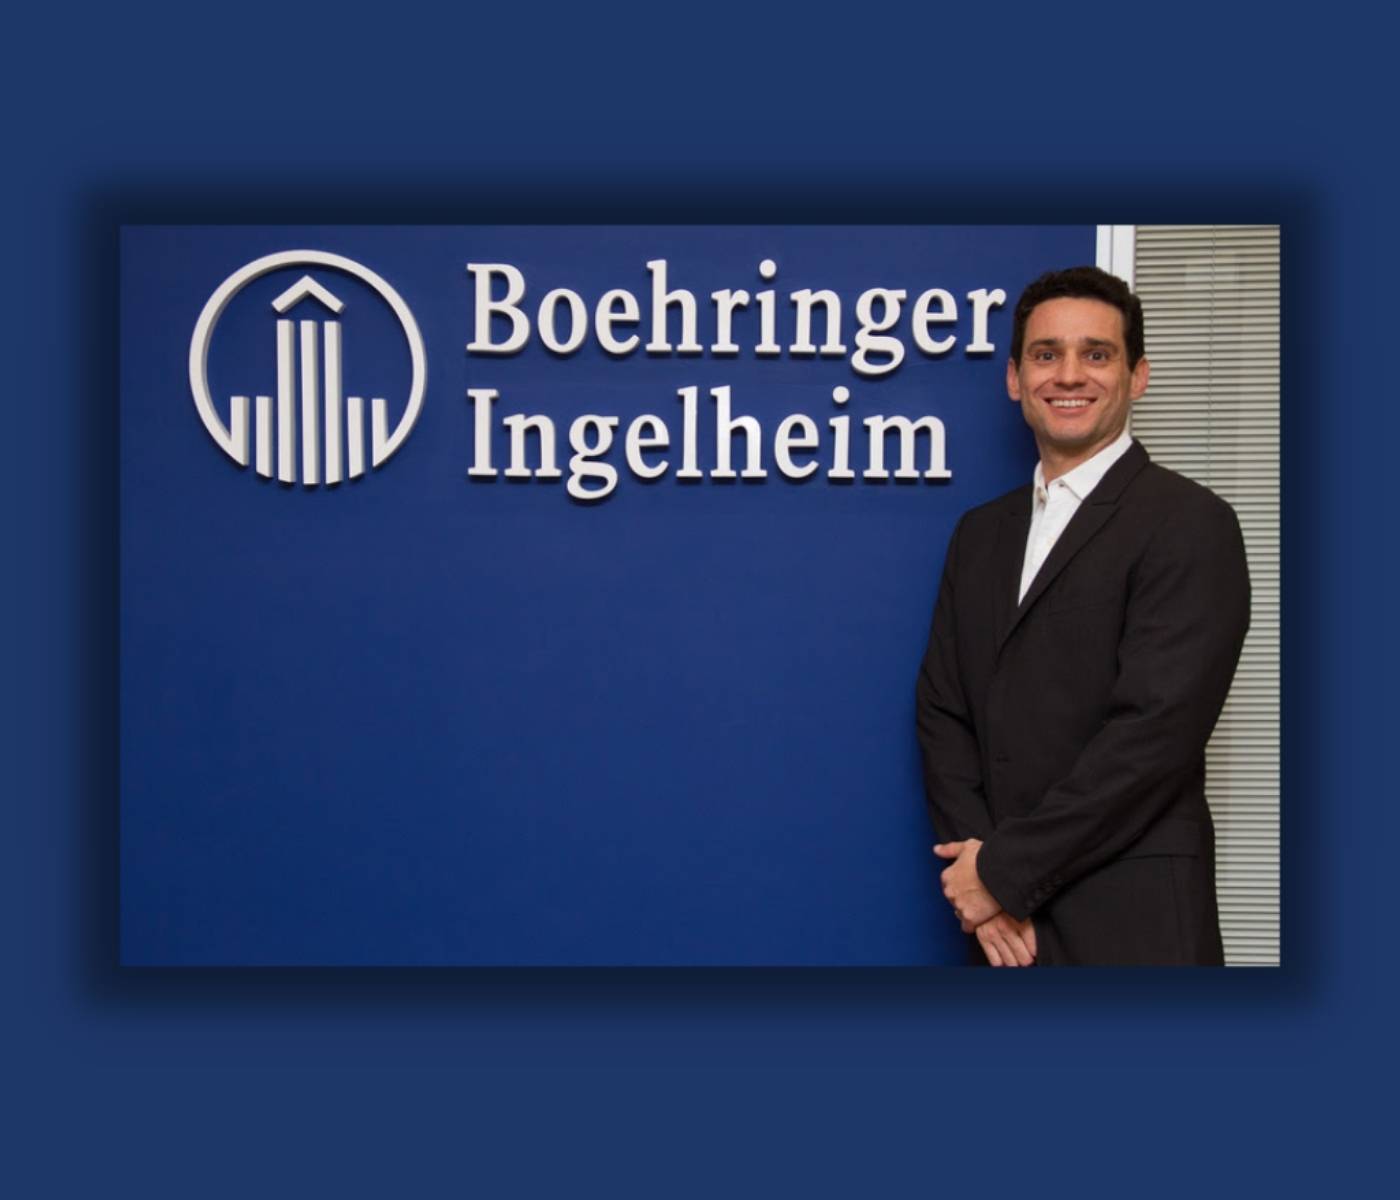  Executivo brasileiro da Boehringer Ingelheim assume divisão de Saúde Animal da empresa na Colômbia e Venezuela